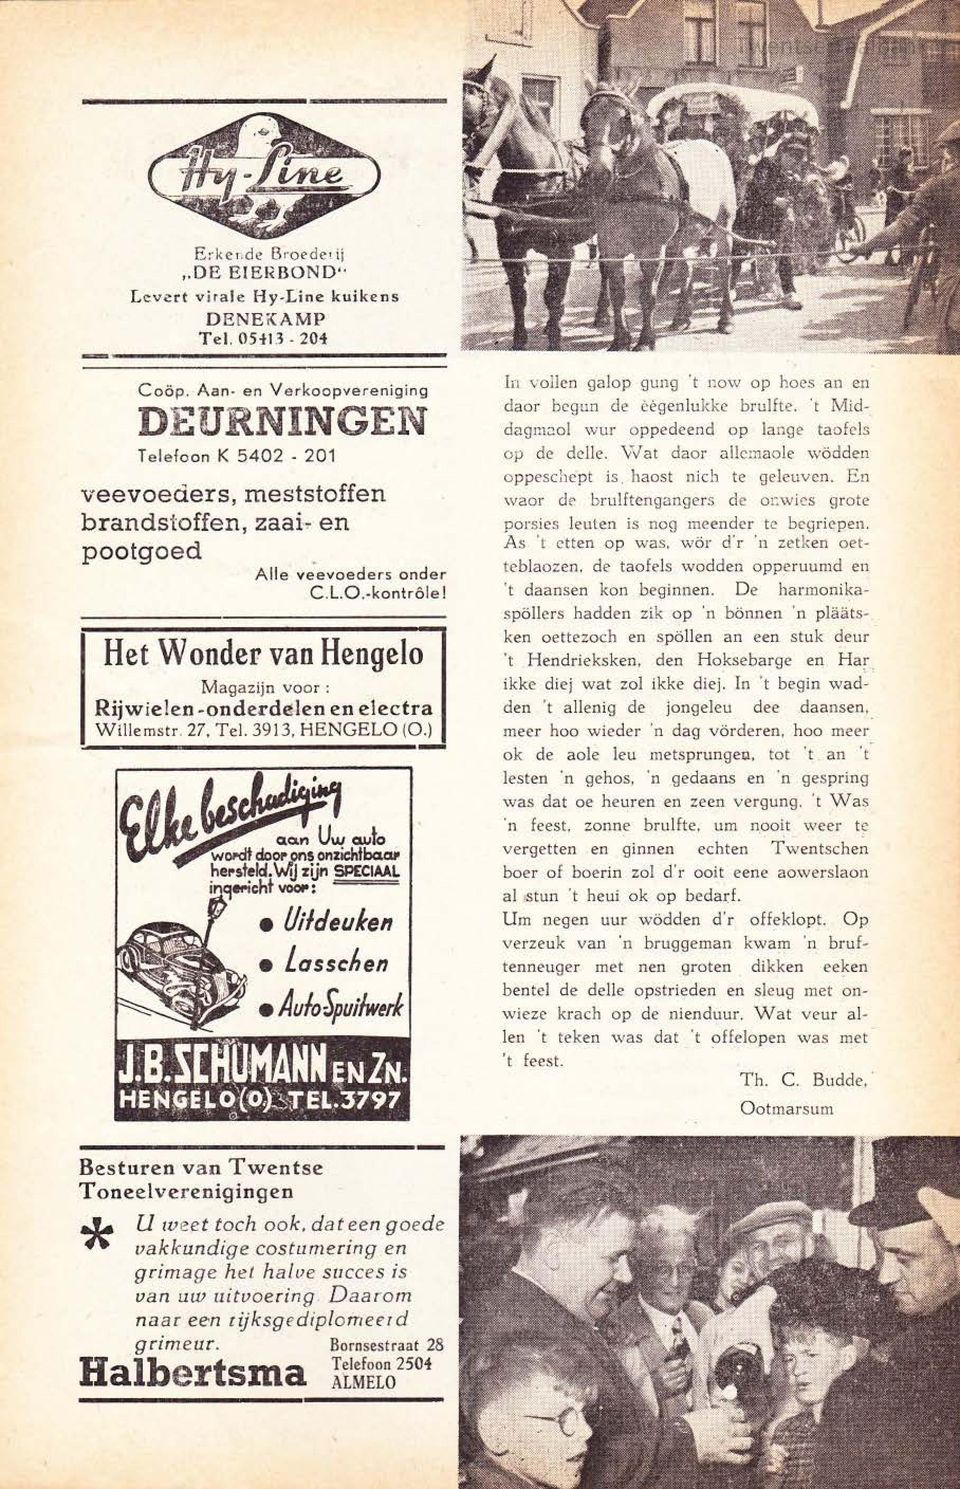 Het Wonder van Hengelo Magazijn voor : Rijwielen -onde.rdeden en electra Wille mstr. 27. Tel. 3913, HENGELO (0.